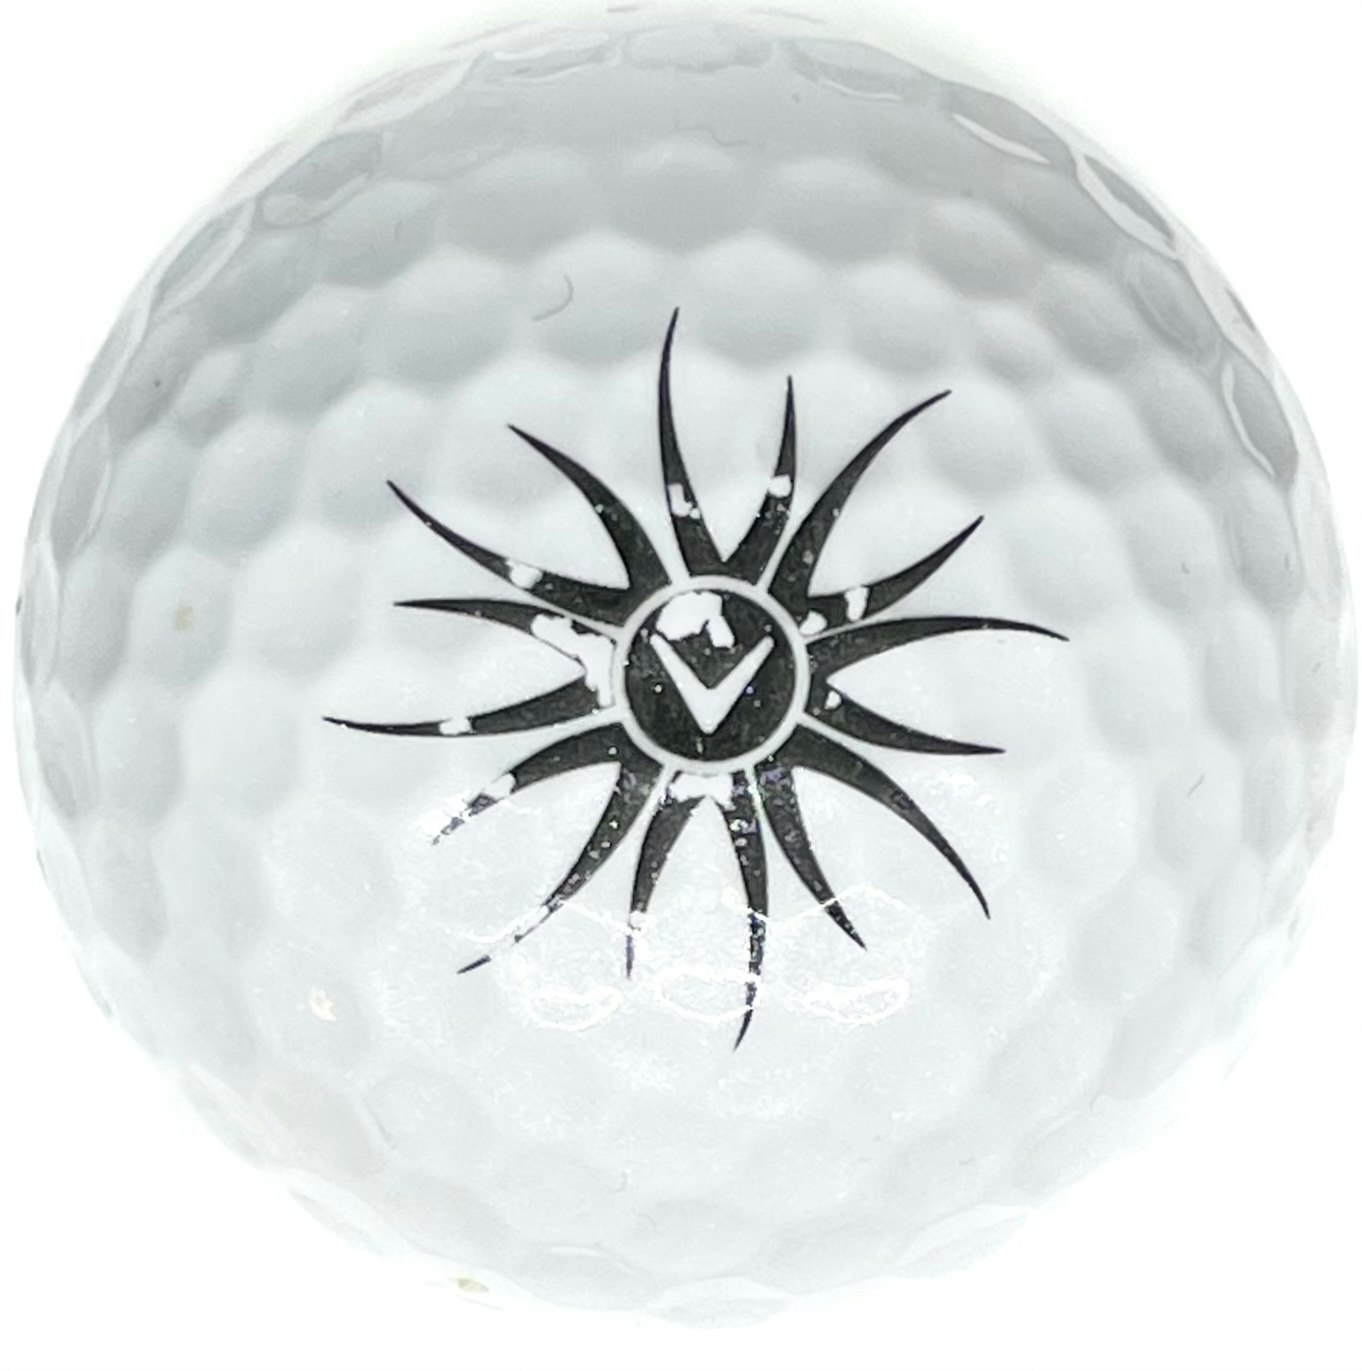 Detta är en vit golfboll, Callaway Solaire